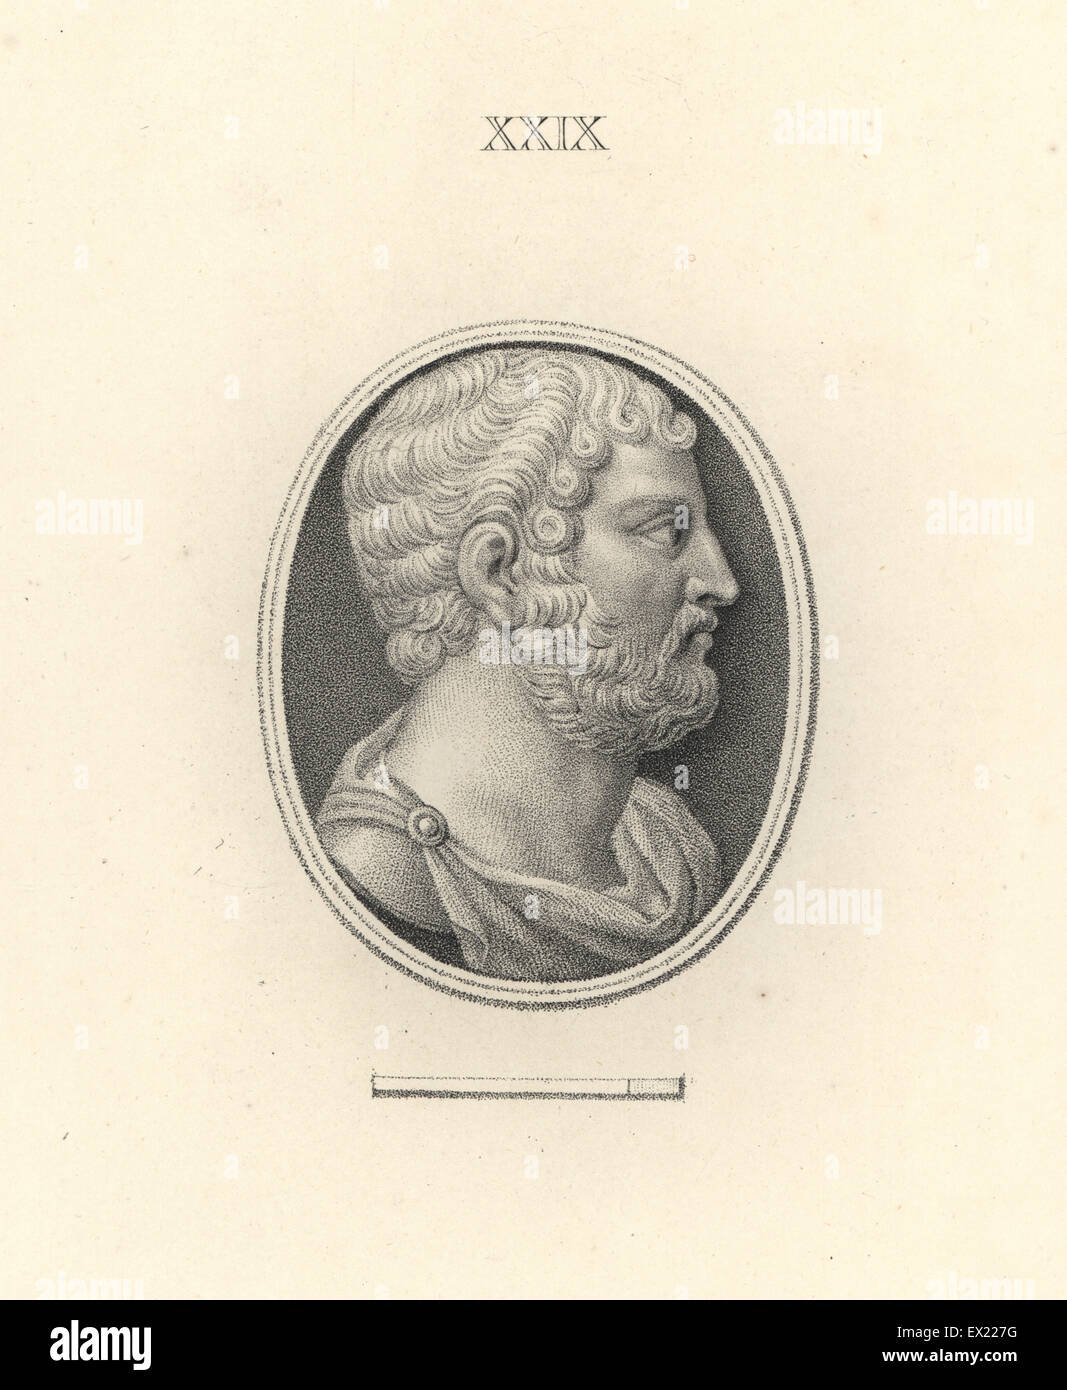 El emperador romano Adriano. Copperplate grabado por Francesco Bartolozzi de 108 placas de joyas antiguas, de 1860. Las joyas de la colección del duque de Marlborough. Foto de stock